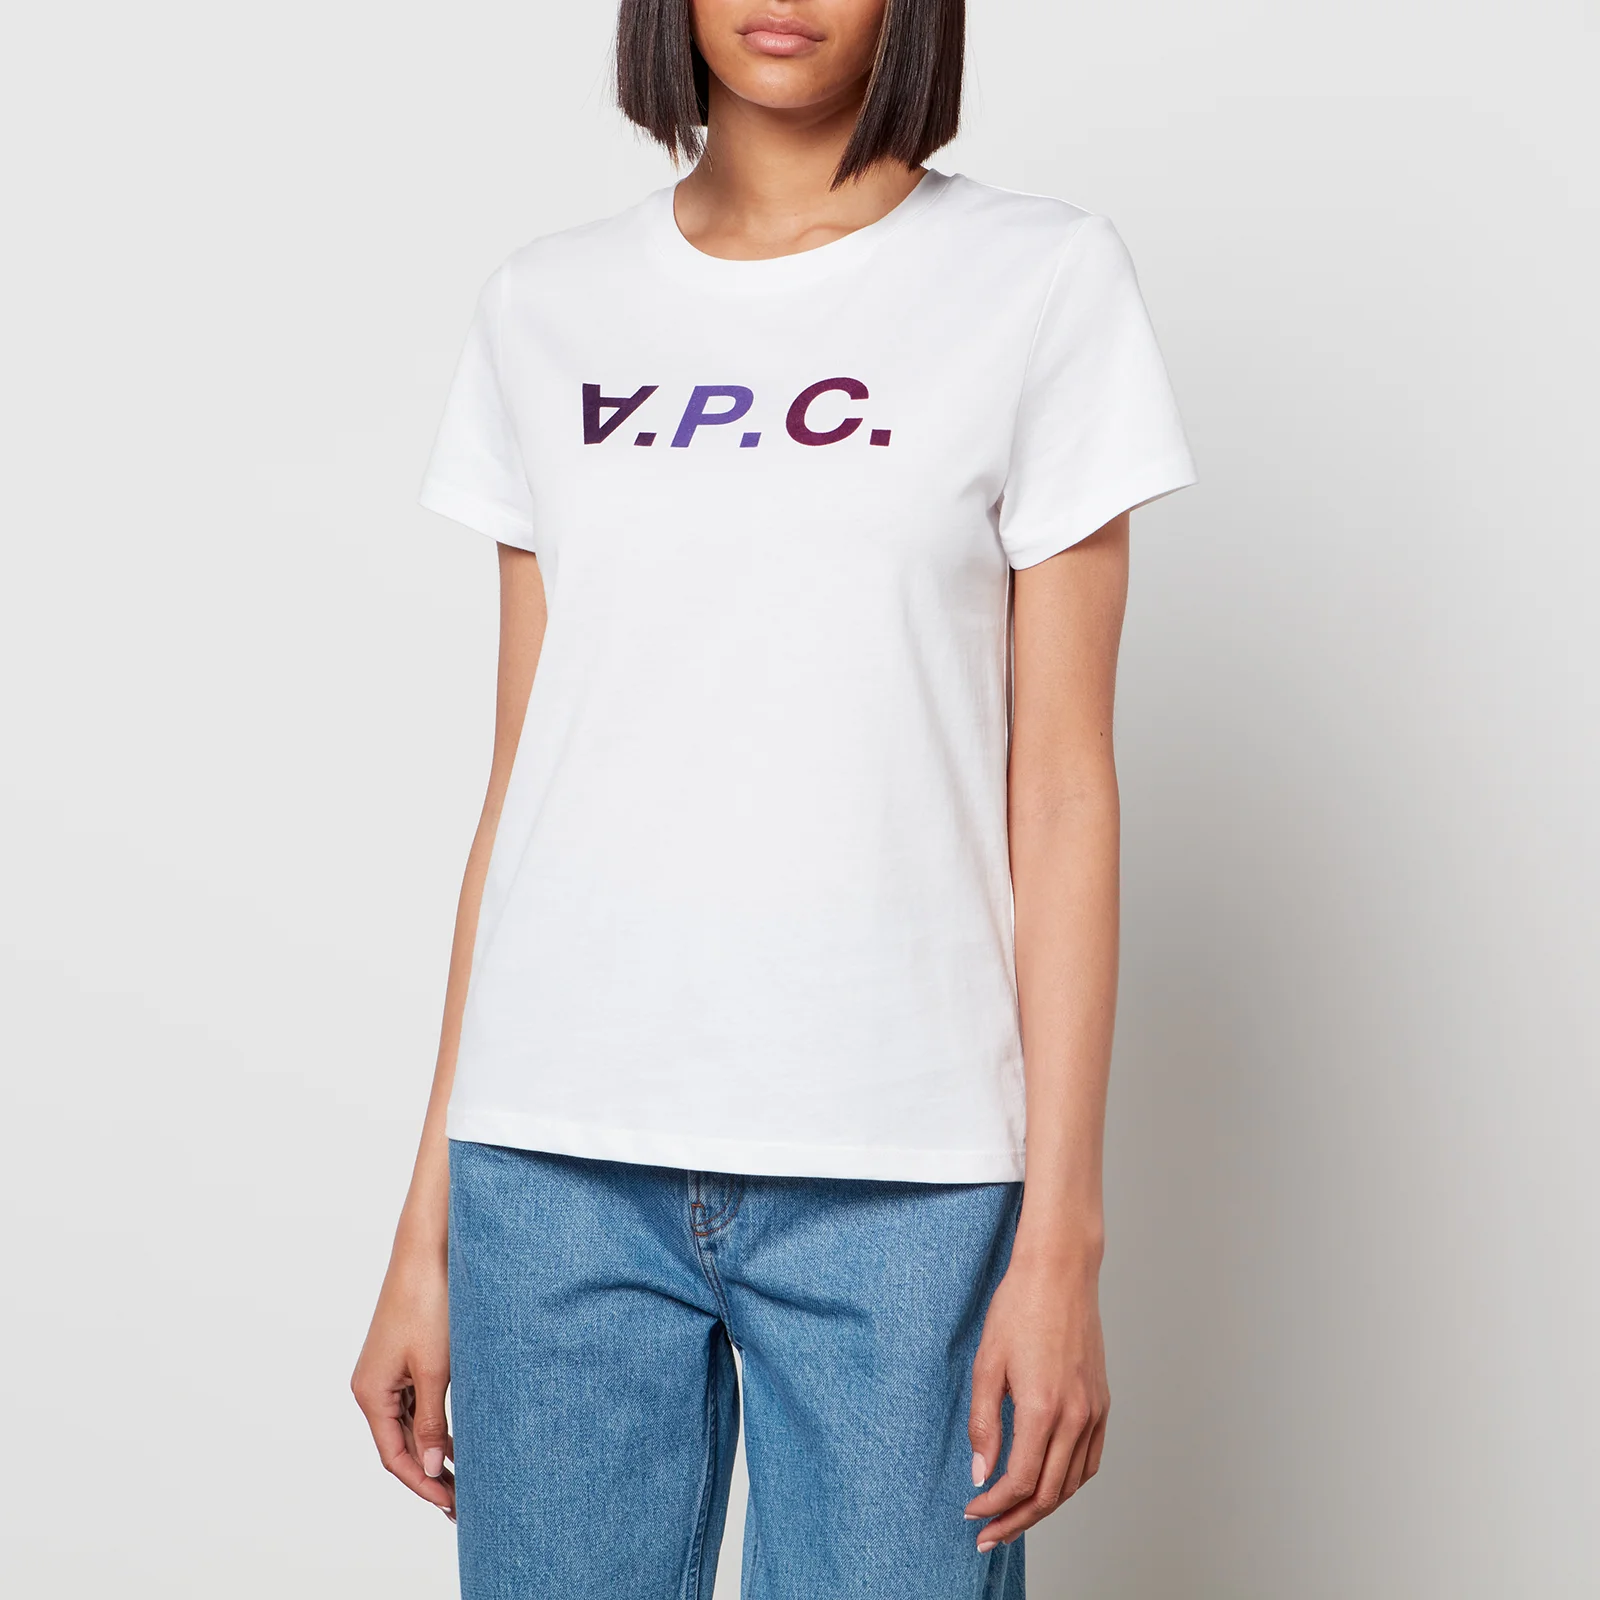 A.P.C. Women's Vpc T-Shirt - Violet Image 1